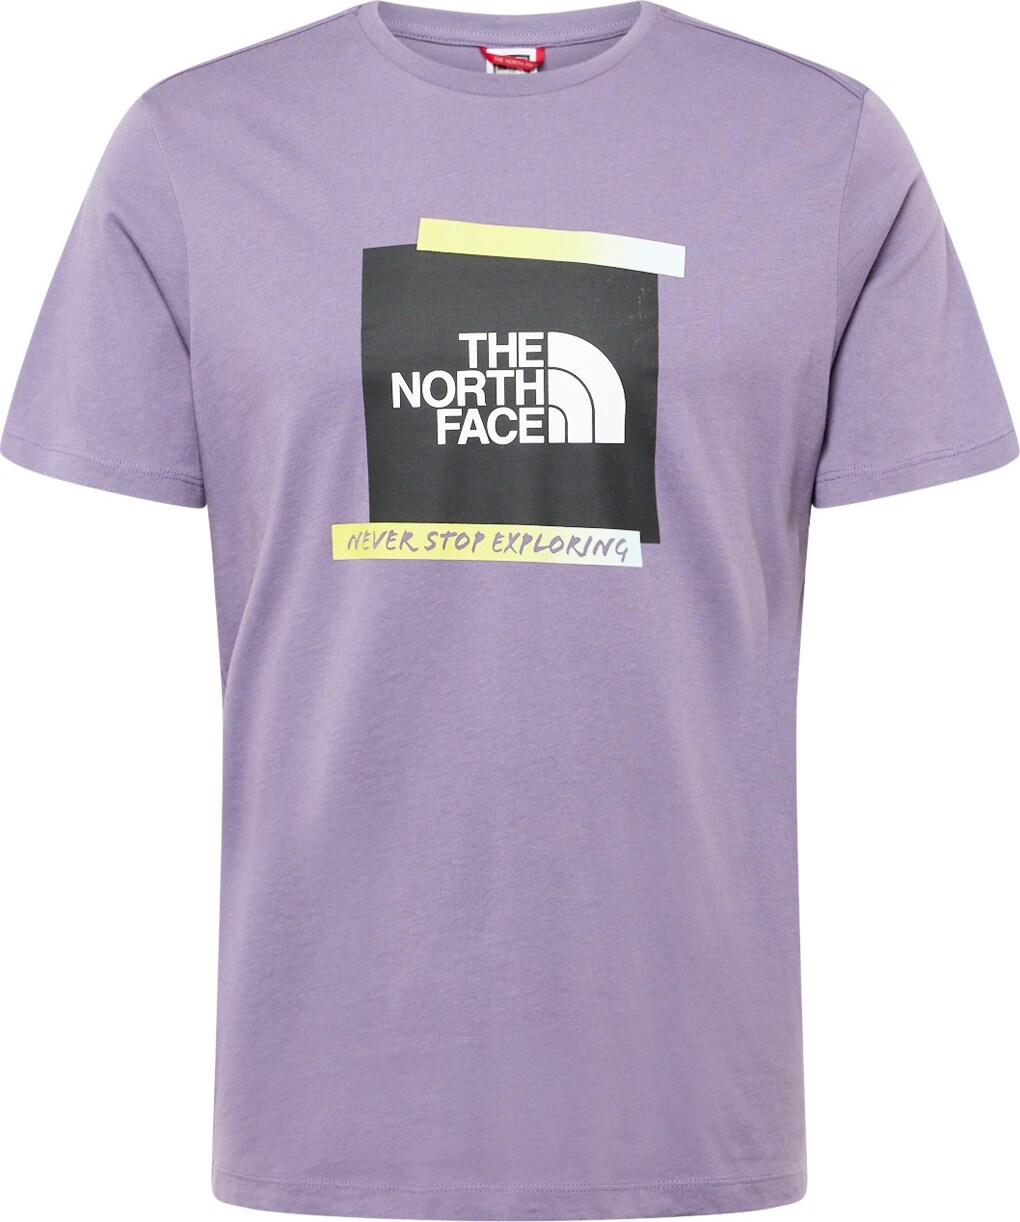 Tričko The North Face světle žlutá / fialová / černá / bílá